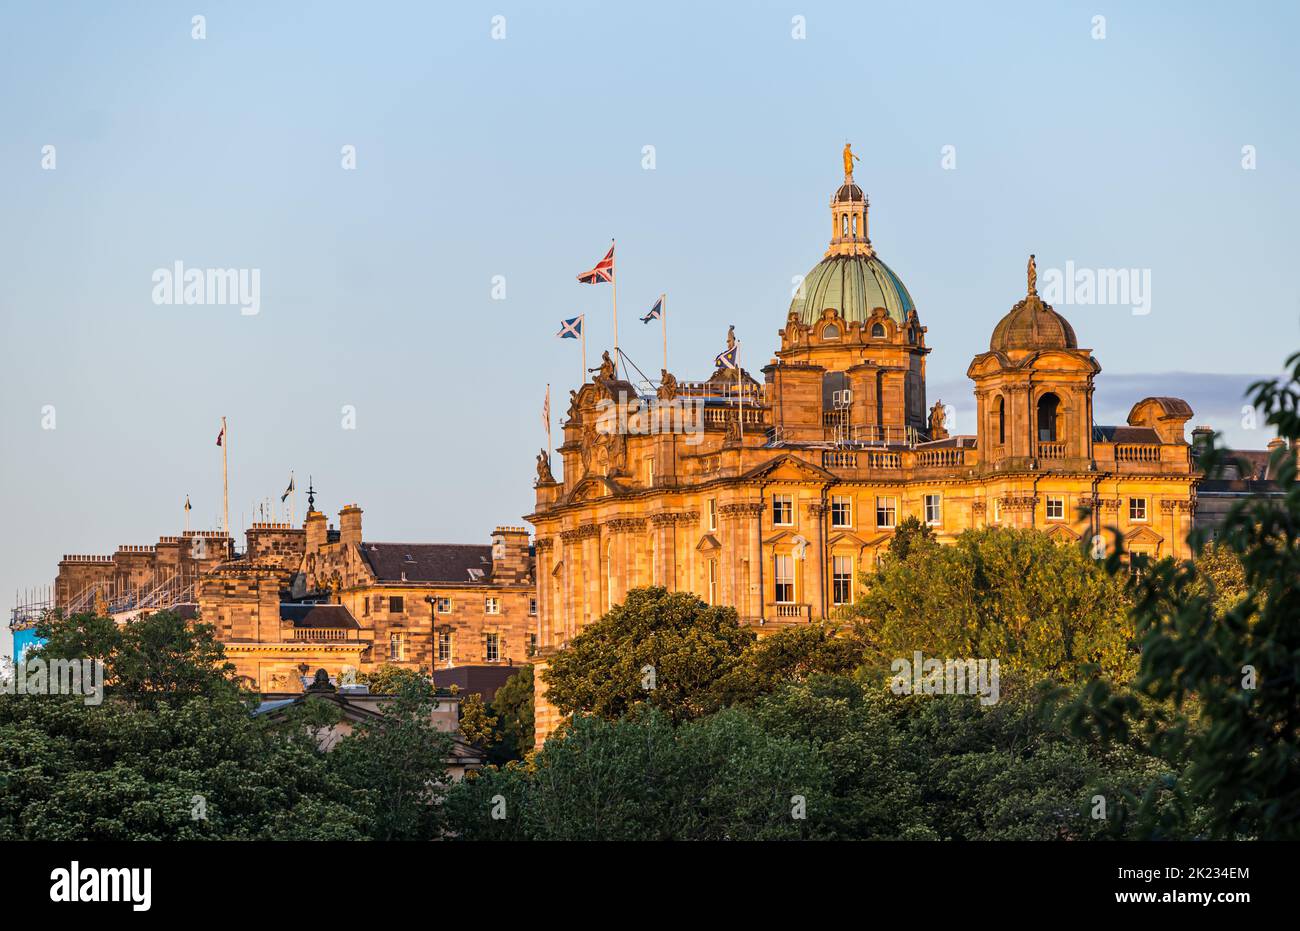 Gran edificio con cúpula de cobre ex sede del Banco de Escocia volando saltire y bandera nacional de la Unión Jack, Edimburgo, Escocia, Reino Unido Foto de stock